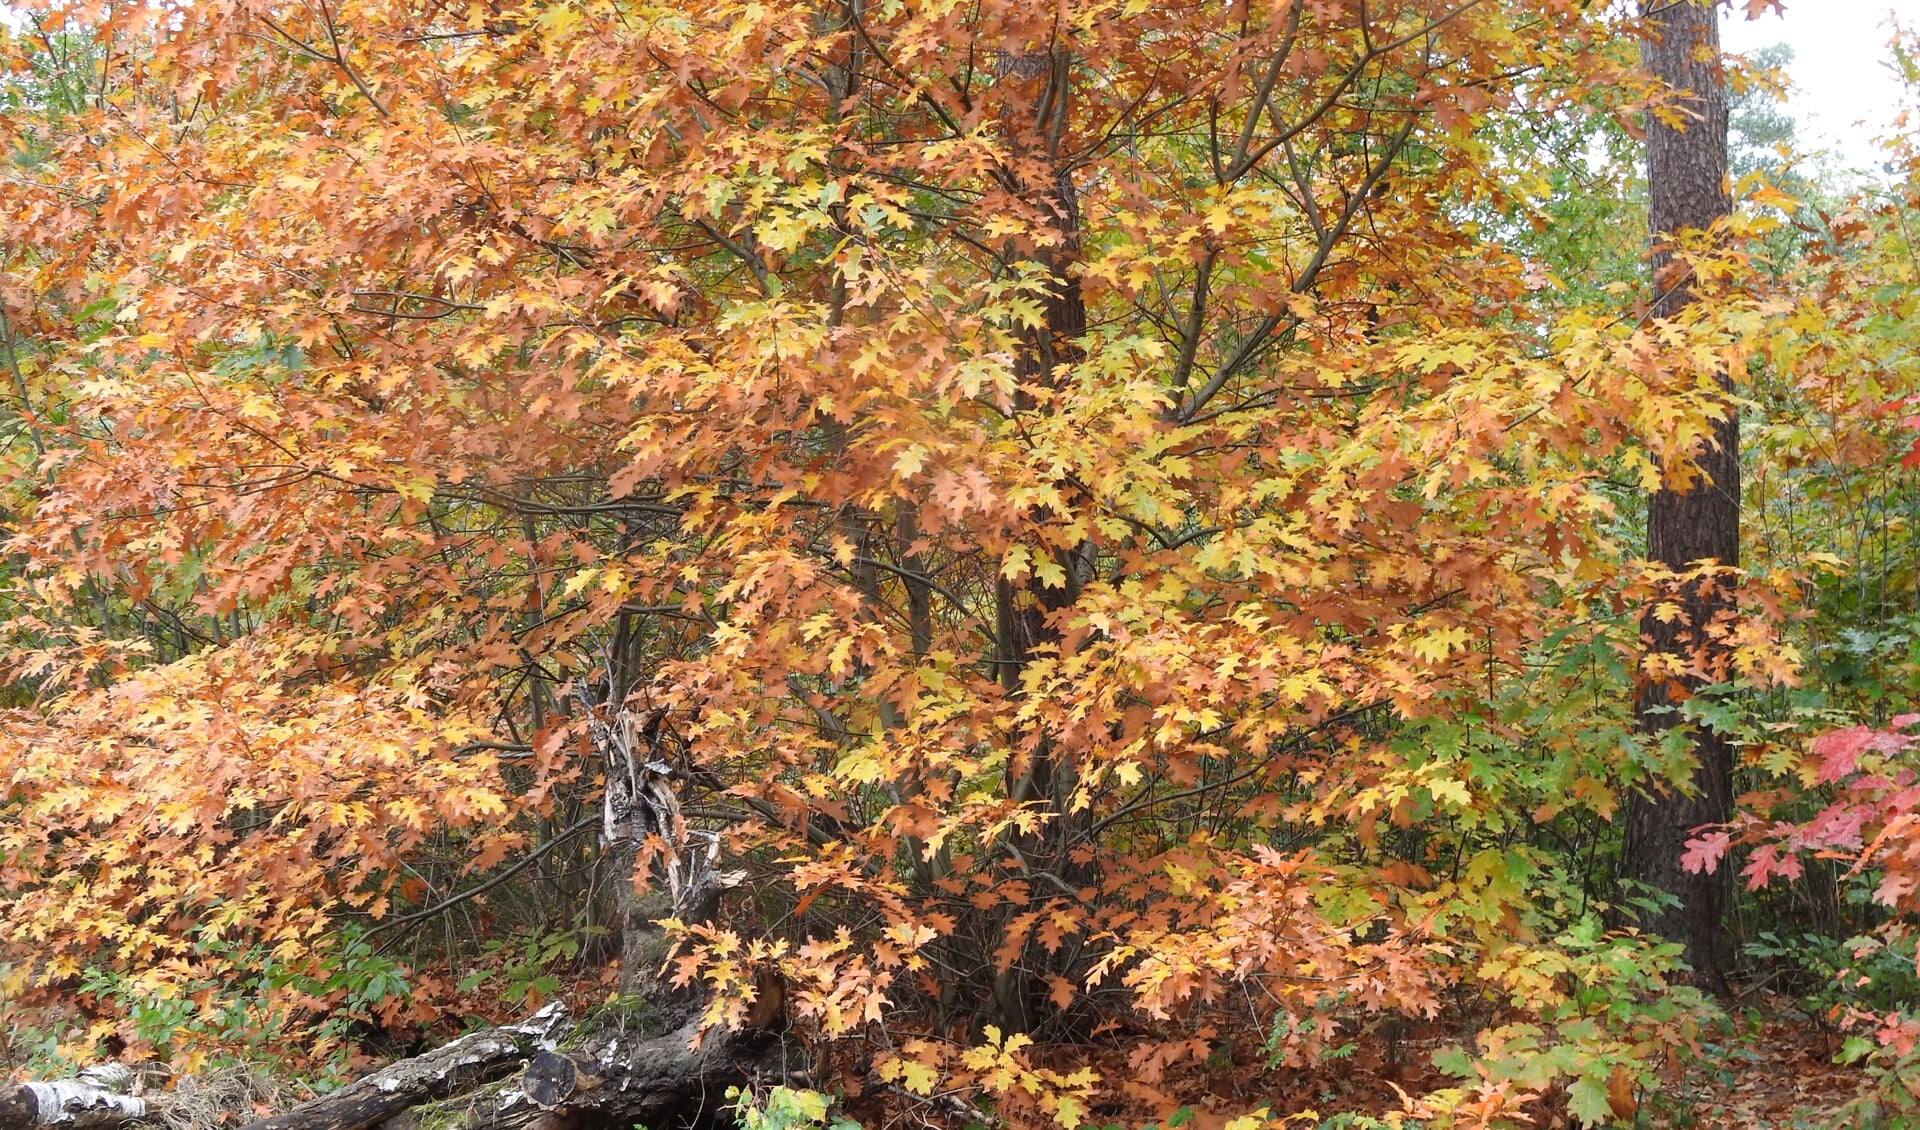 Herfstkleuren, zoals hier op de Galderse heide.